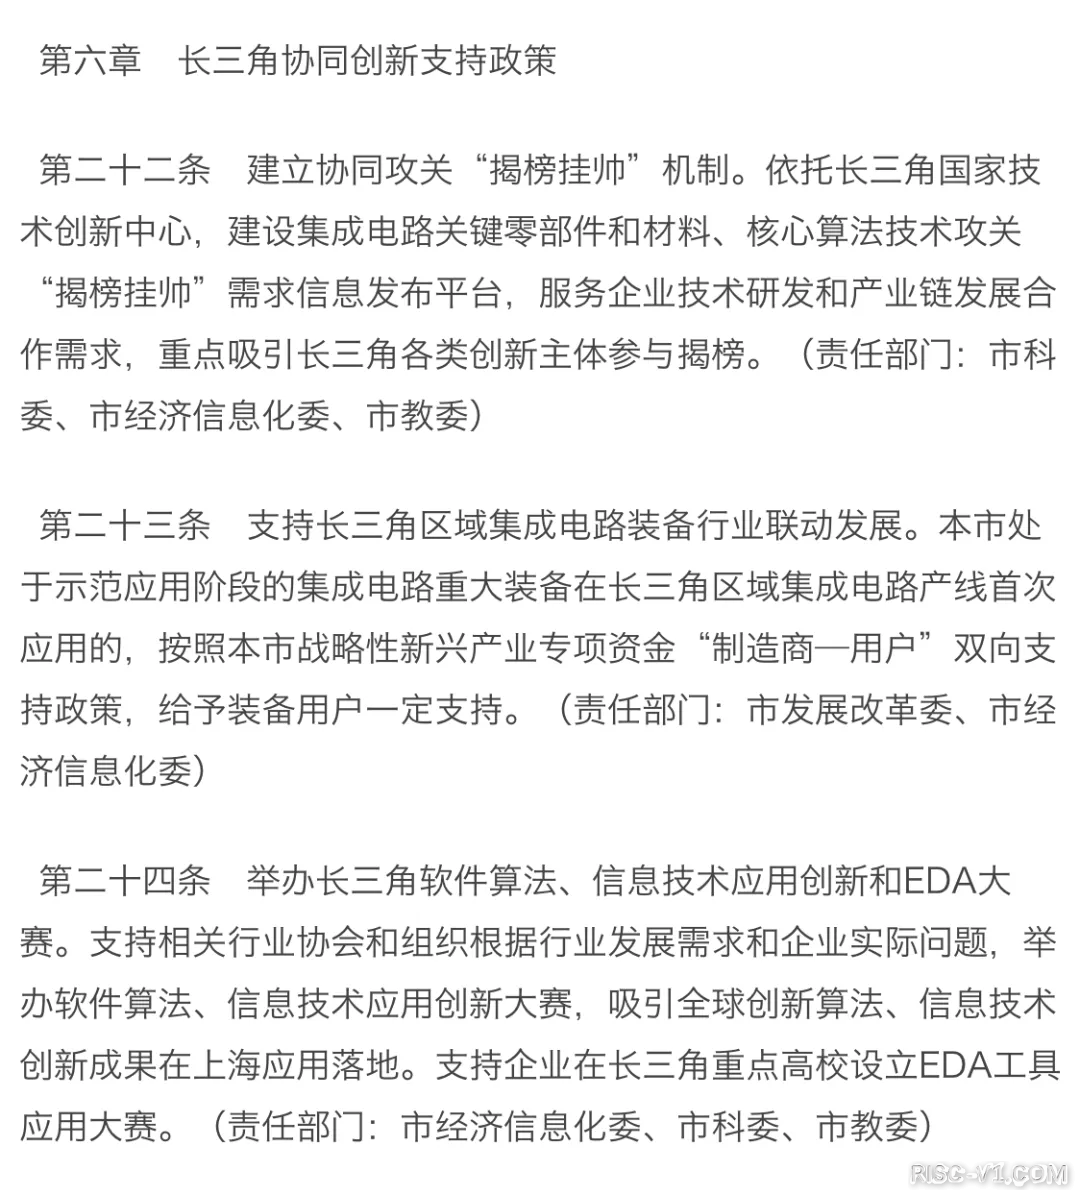 国内芯片技术交流-上海发布芯片新政，流片最高补贴1亿元risc-v单片机中文社区(14)